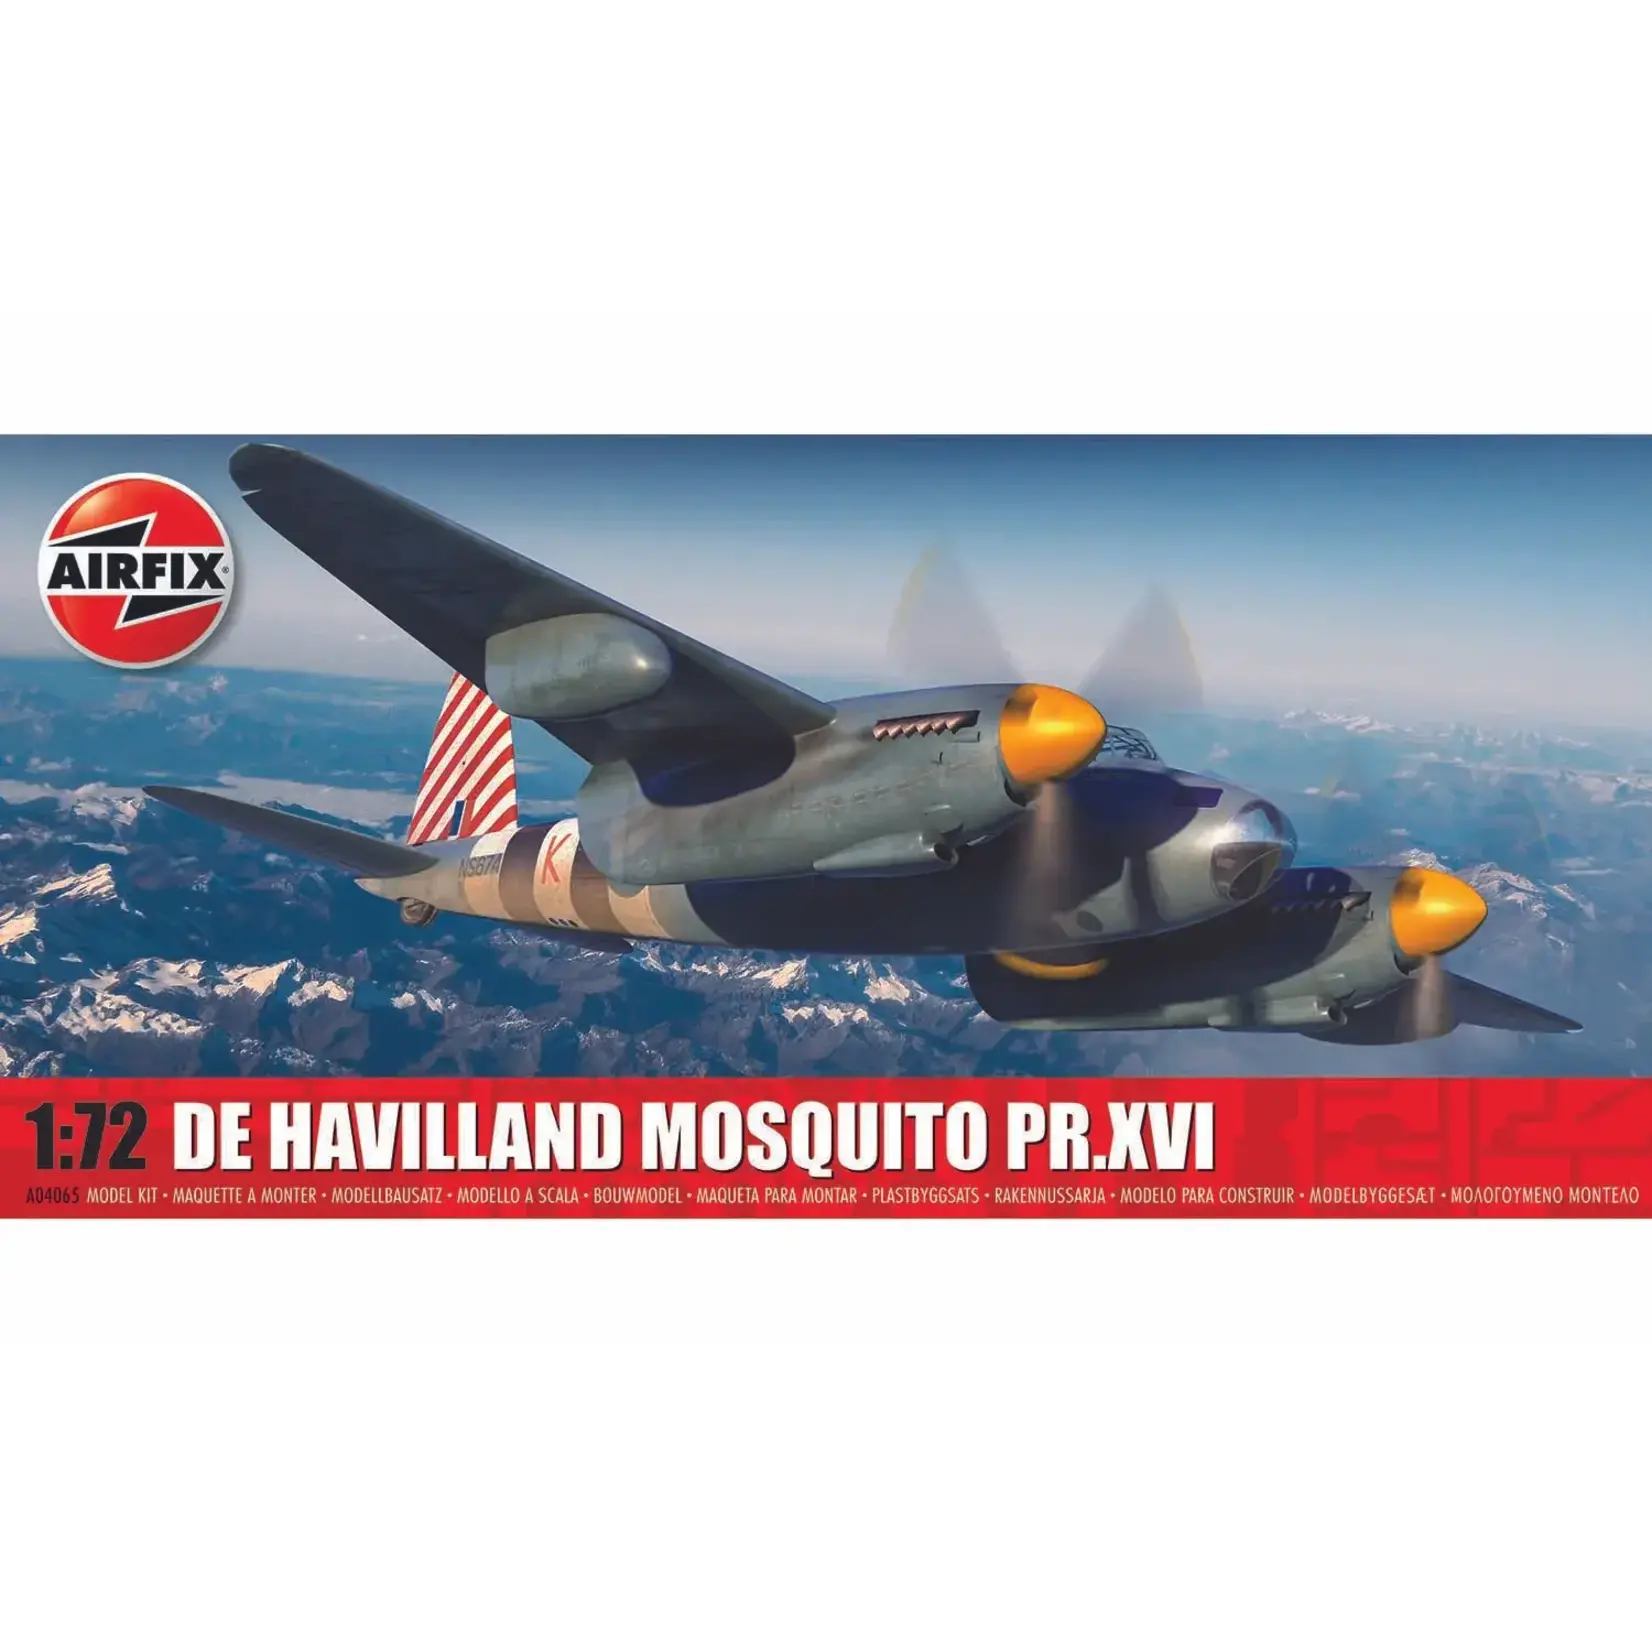 Airfix AIR04065 De Havilland Mosquito PR.XVI (1/72)